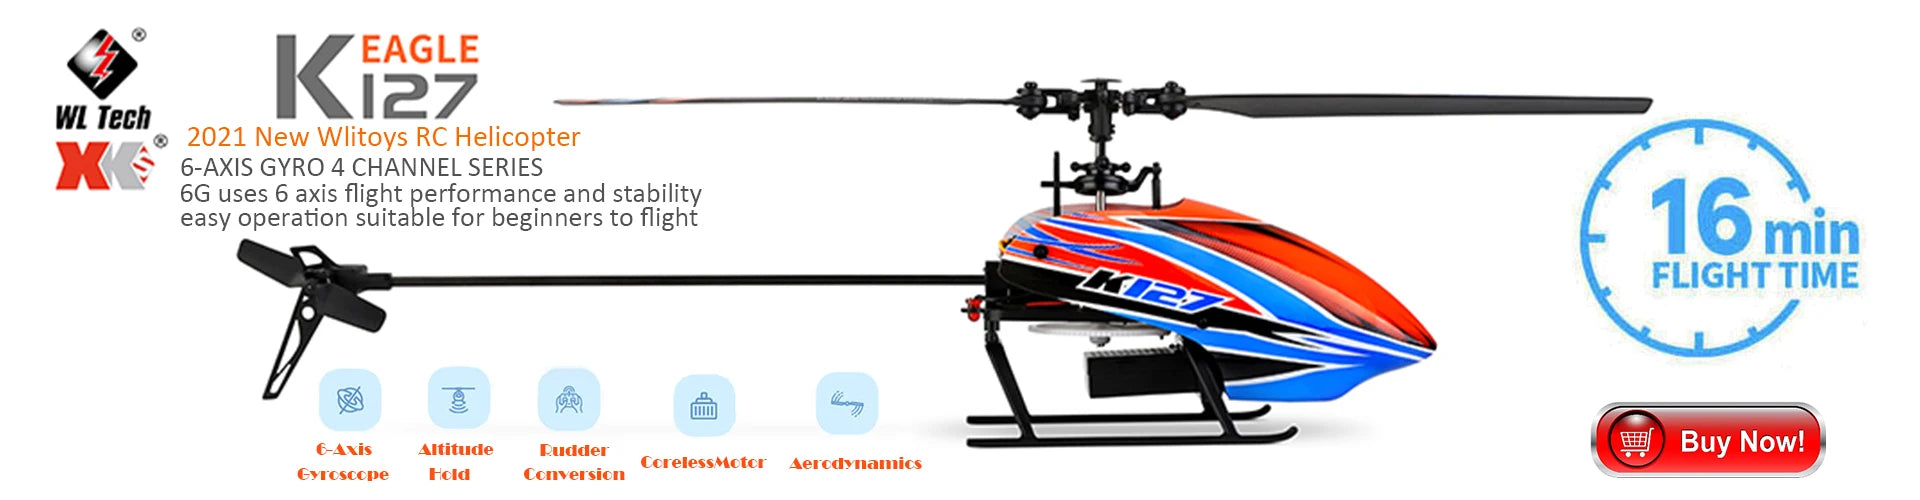 Cheerson CX10 Mini Drone, eagle wl tech 127 2021 new 